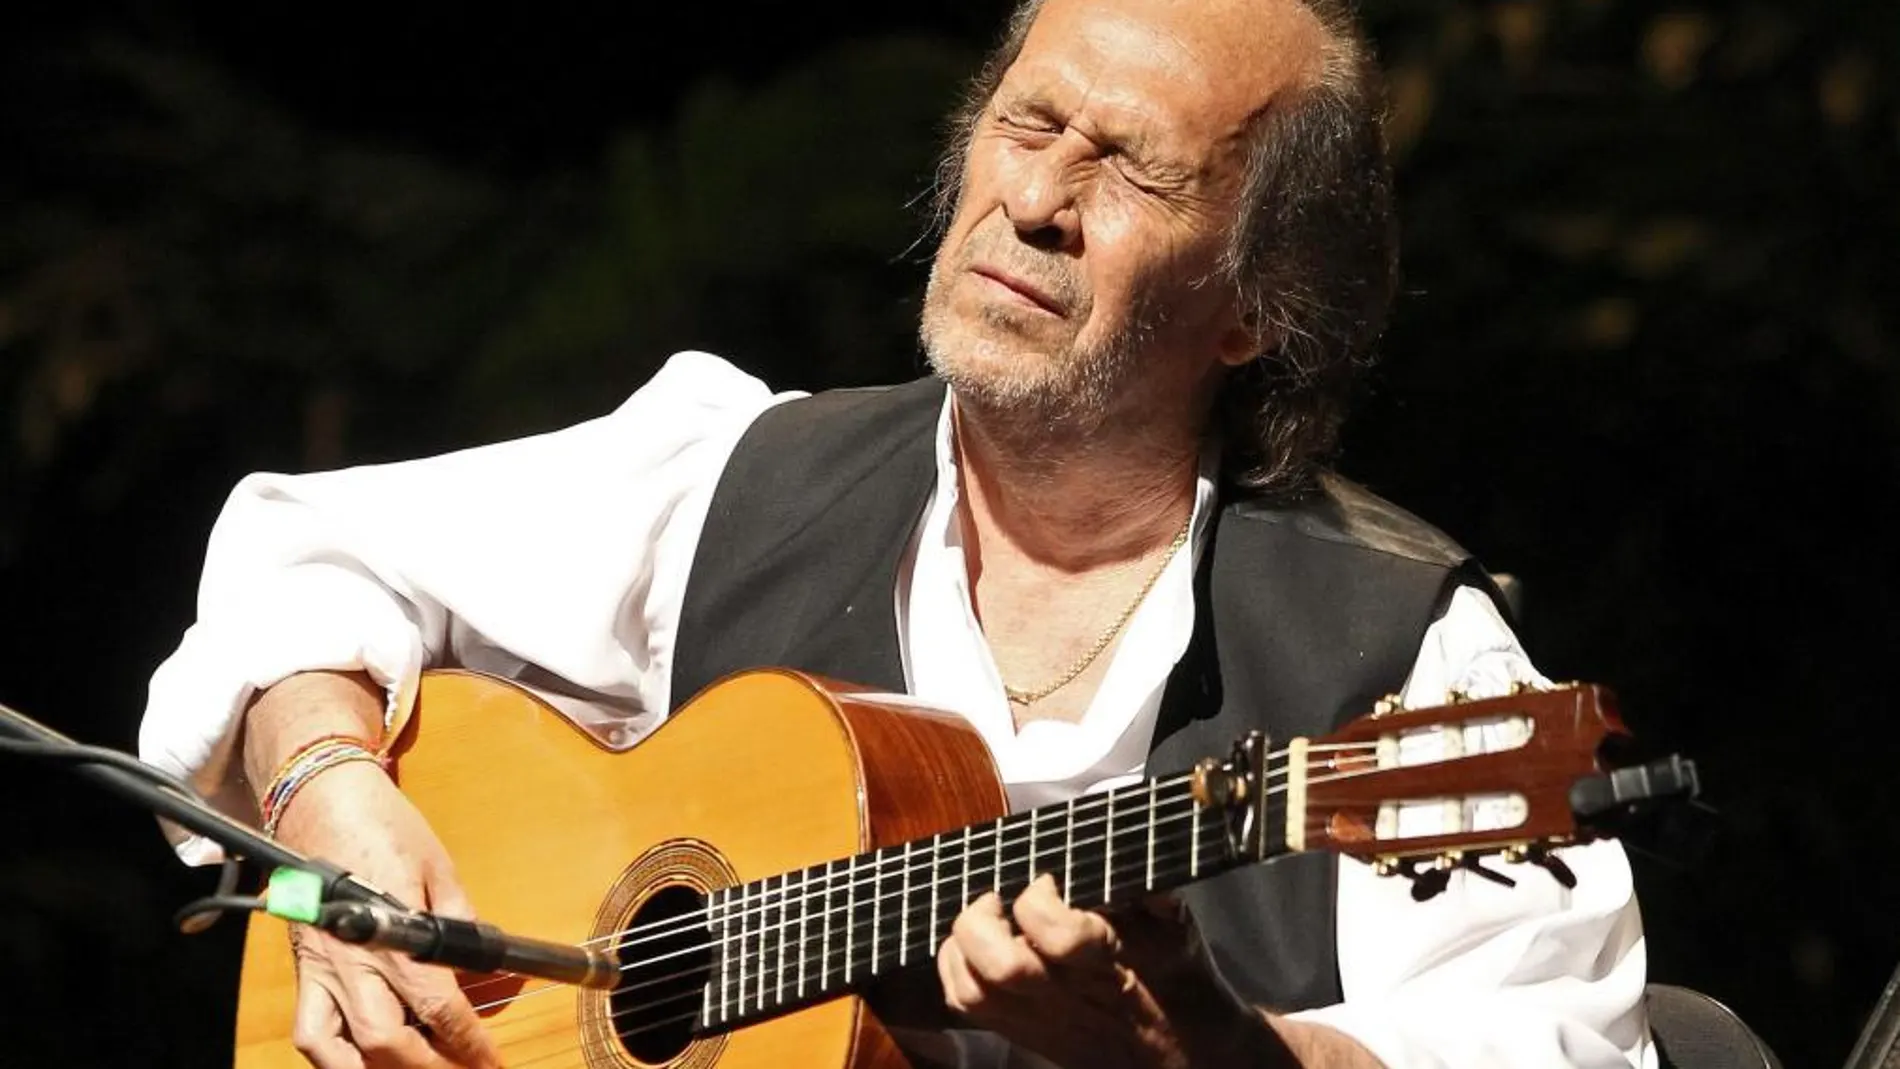 El músico gaditano Paco de Lucía ha fallecido a los 66 años